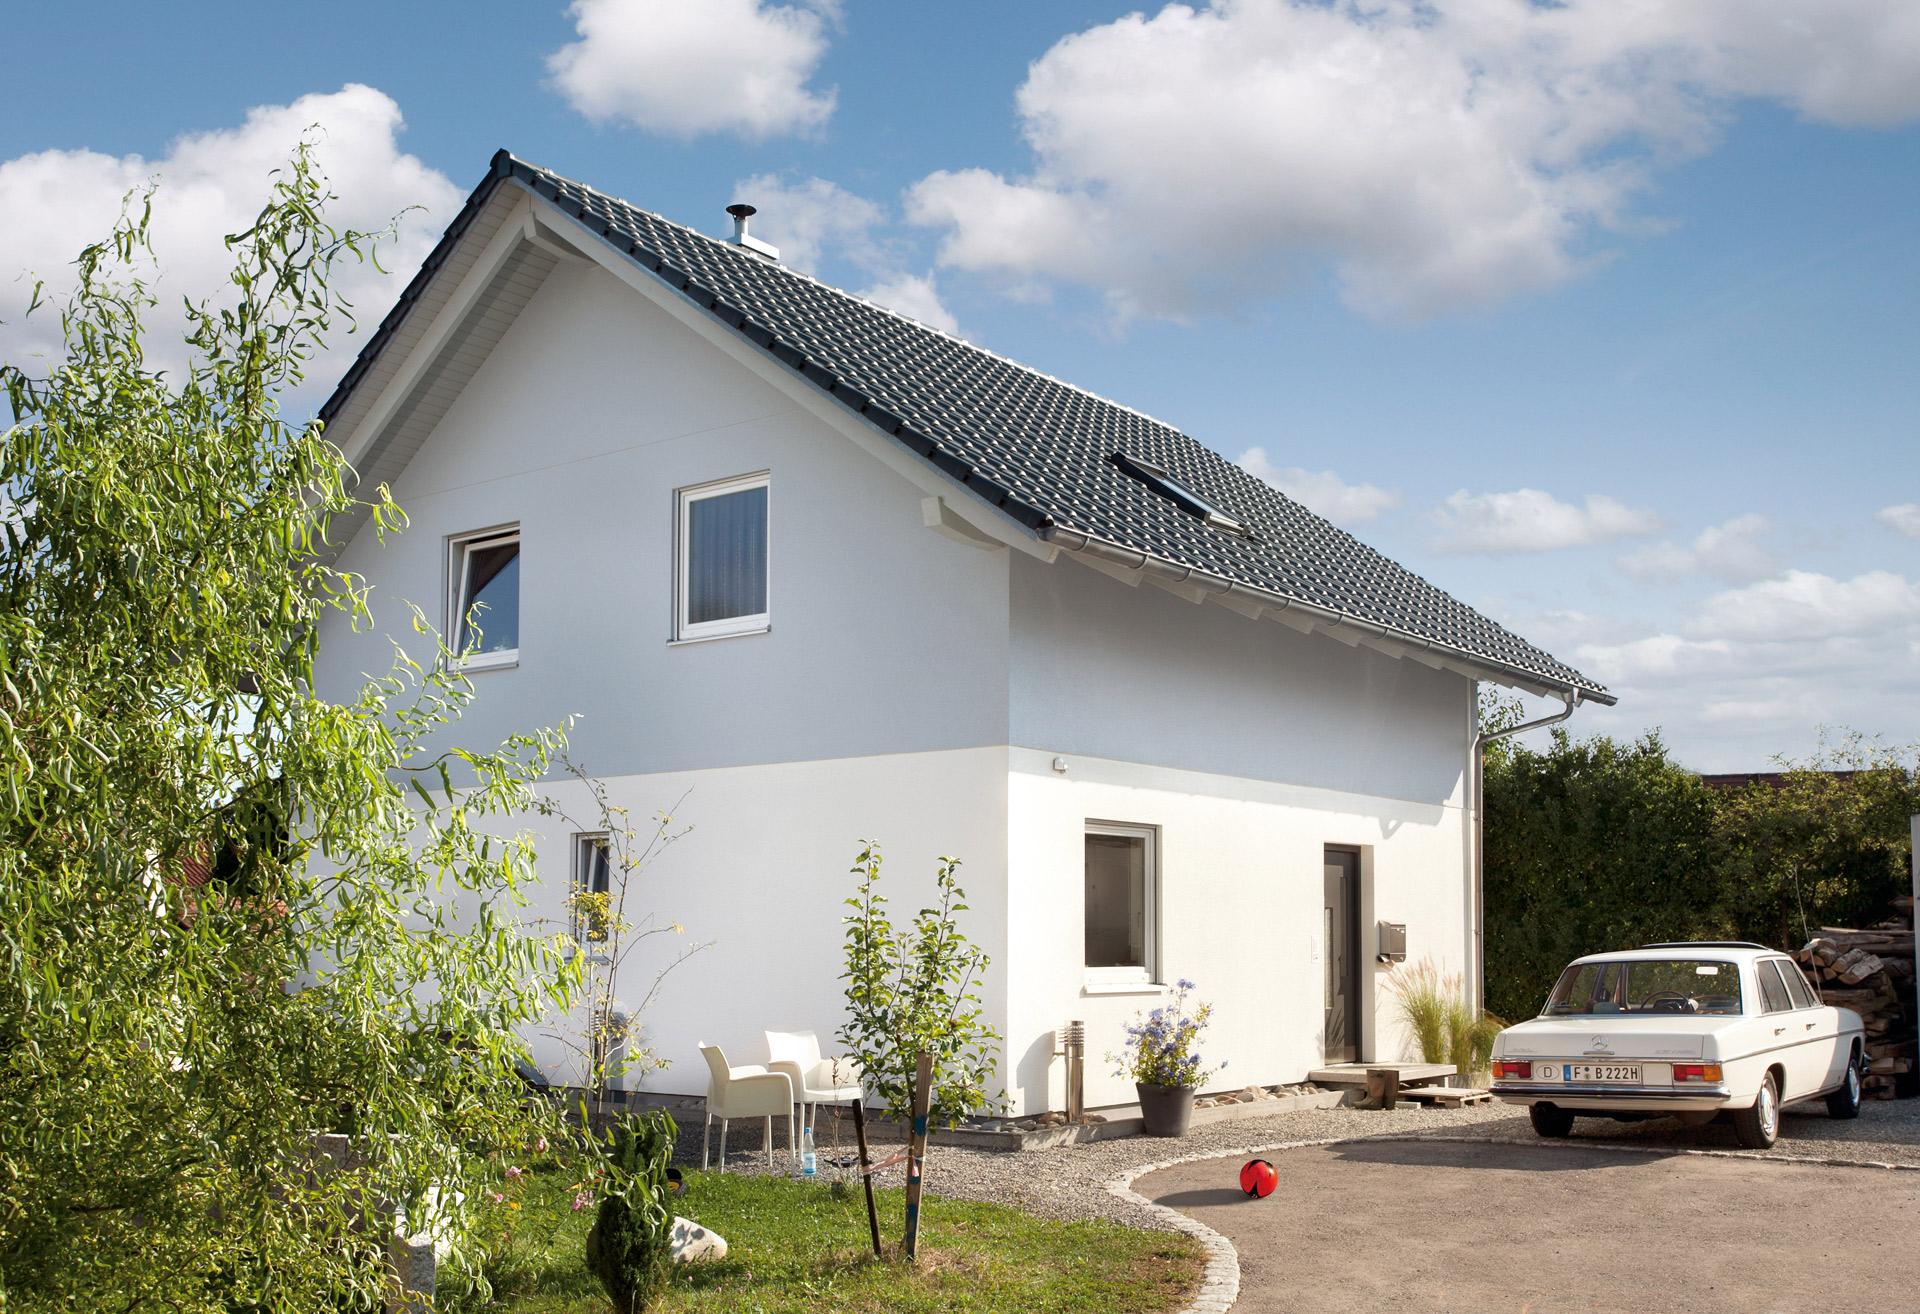 Zero energy house from SchwörerHaus